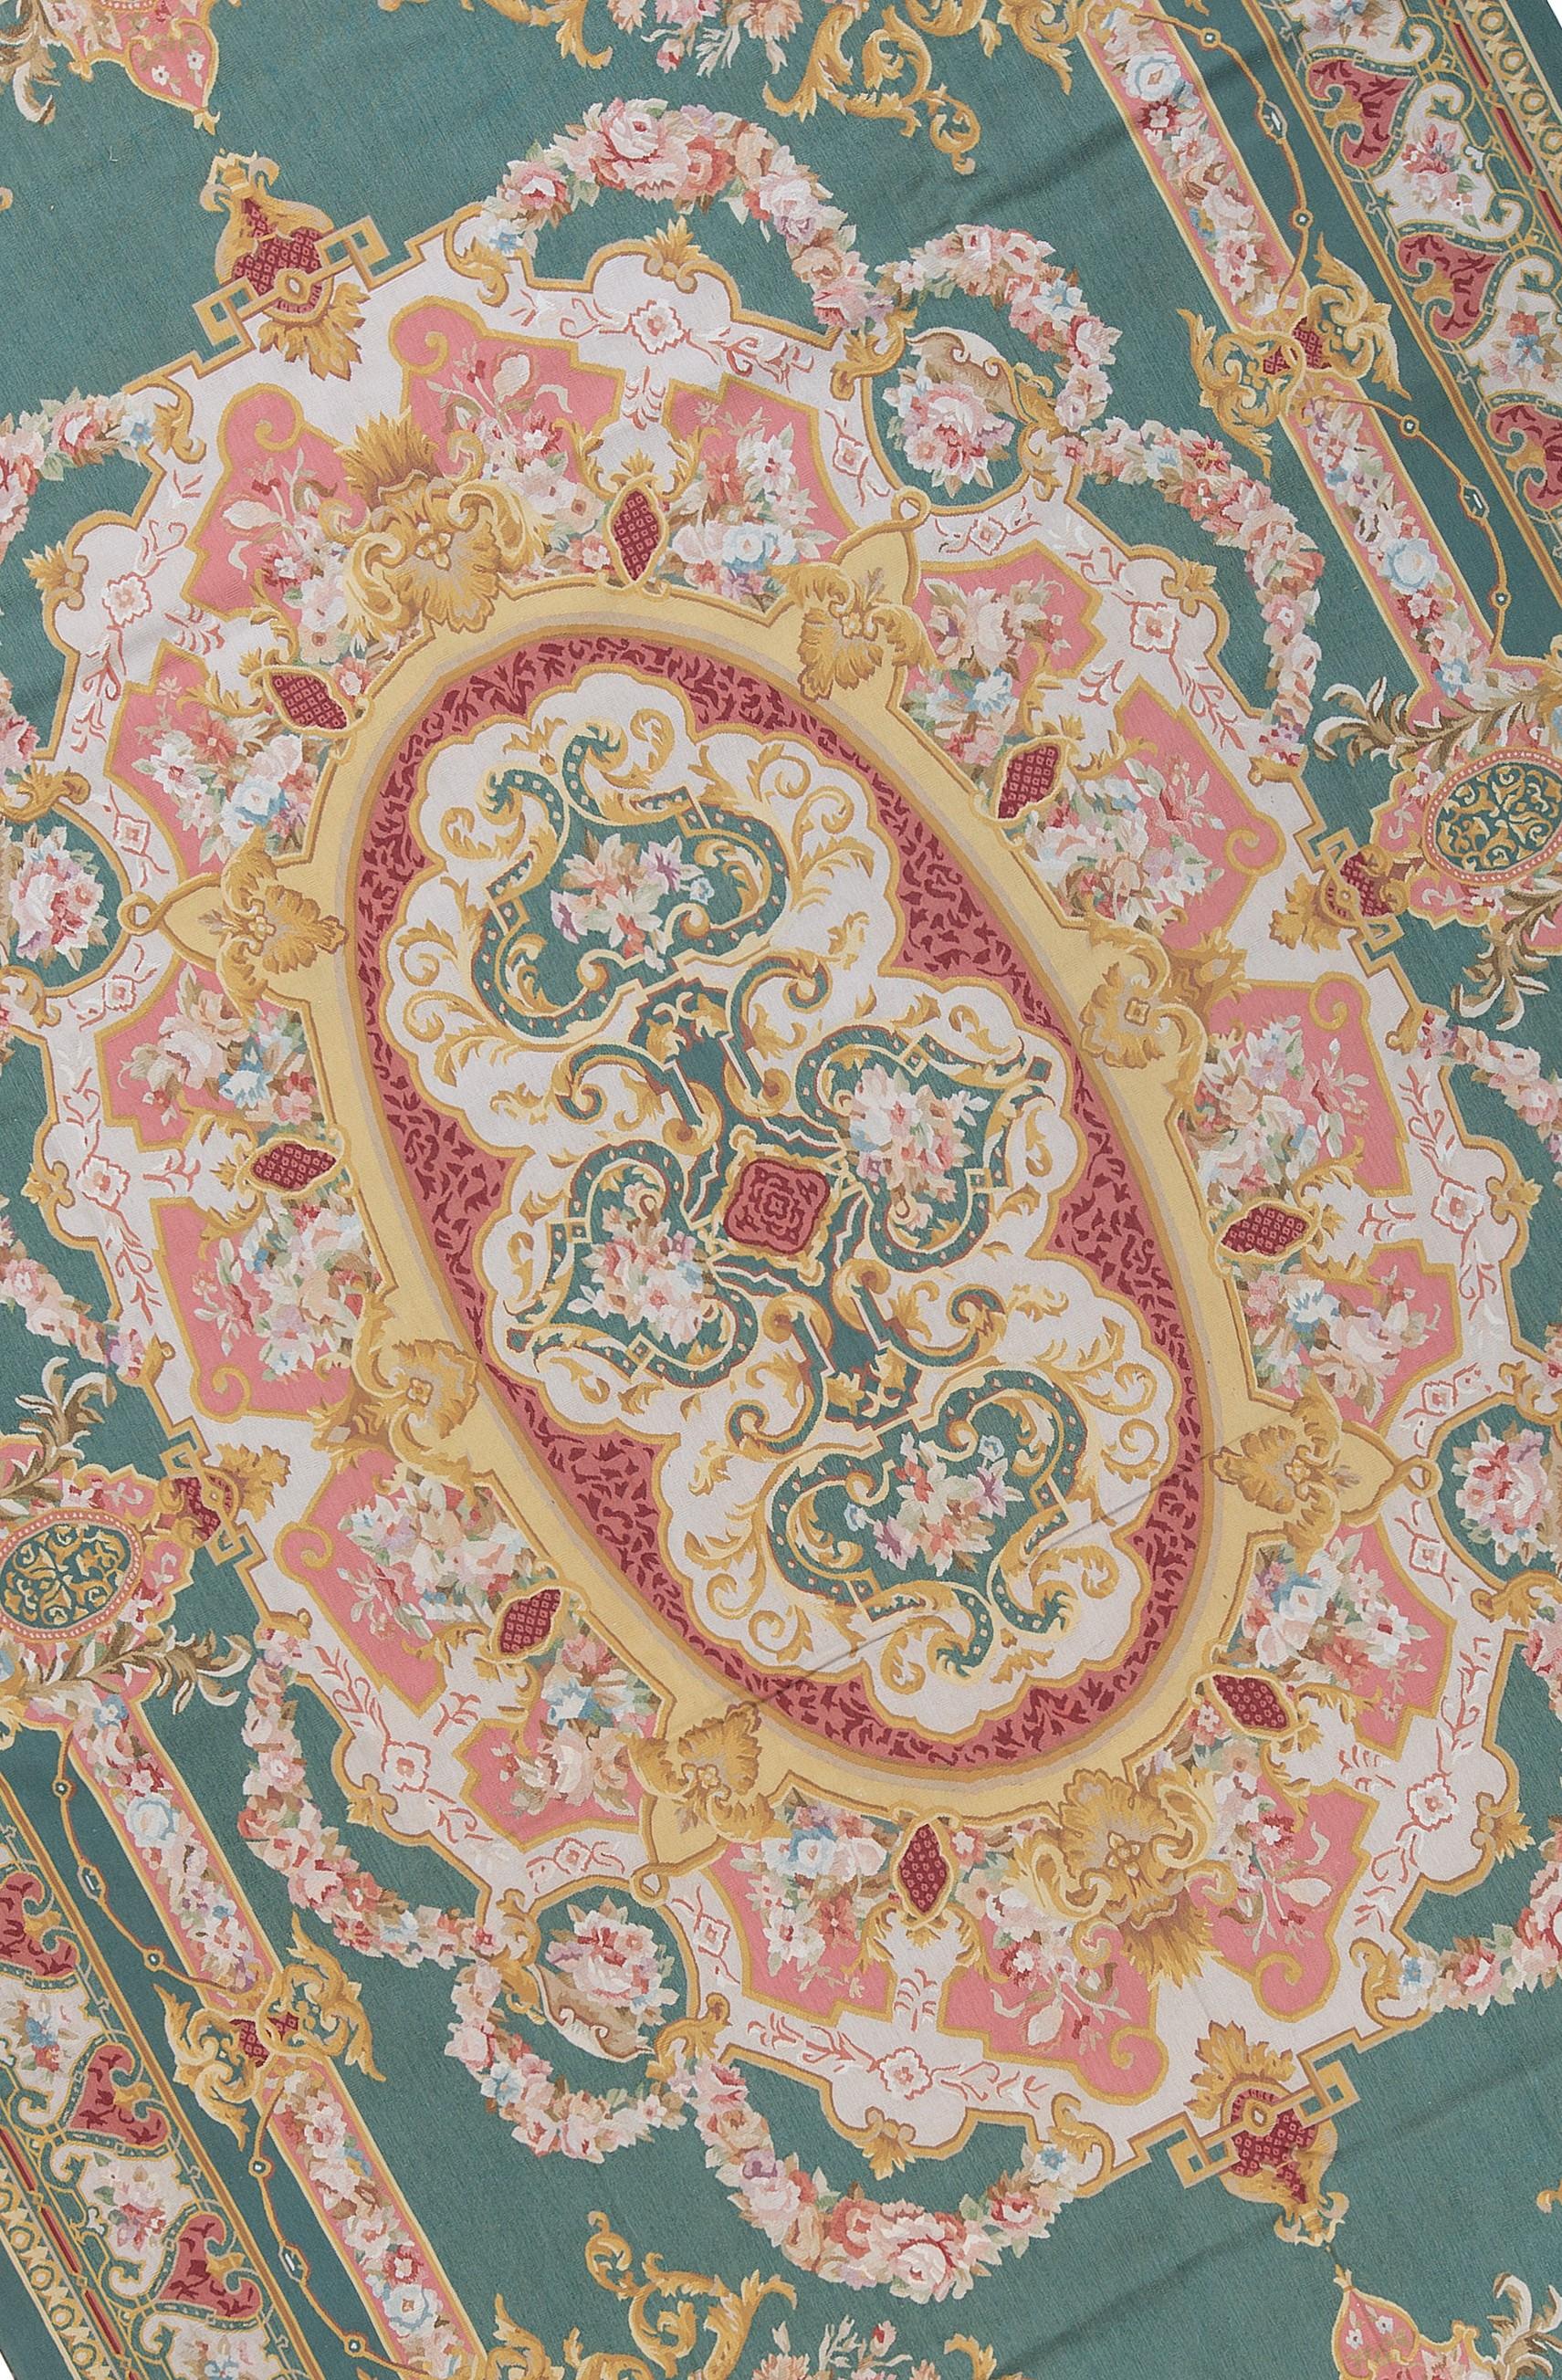 Recréation tissée à la main des tapis d'Aubusson classiques français à tissage plat que l'on trouve dans les maisons et les palais les plus raffinés depuis la fin du XVIIe siècle. Taille 10' 9